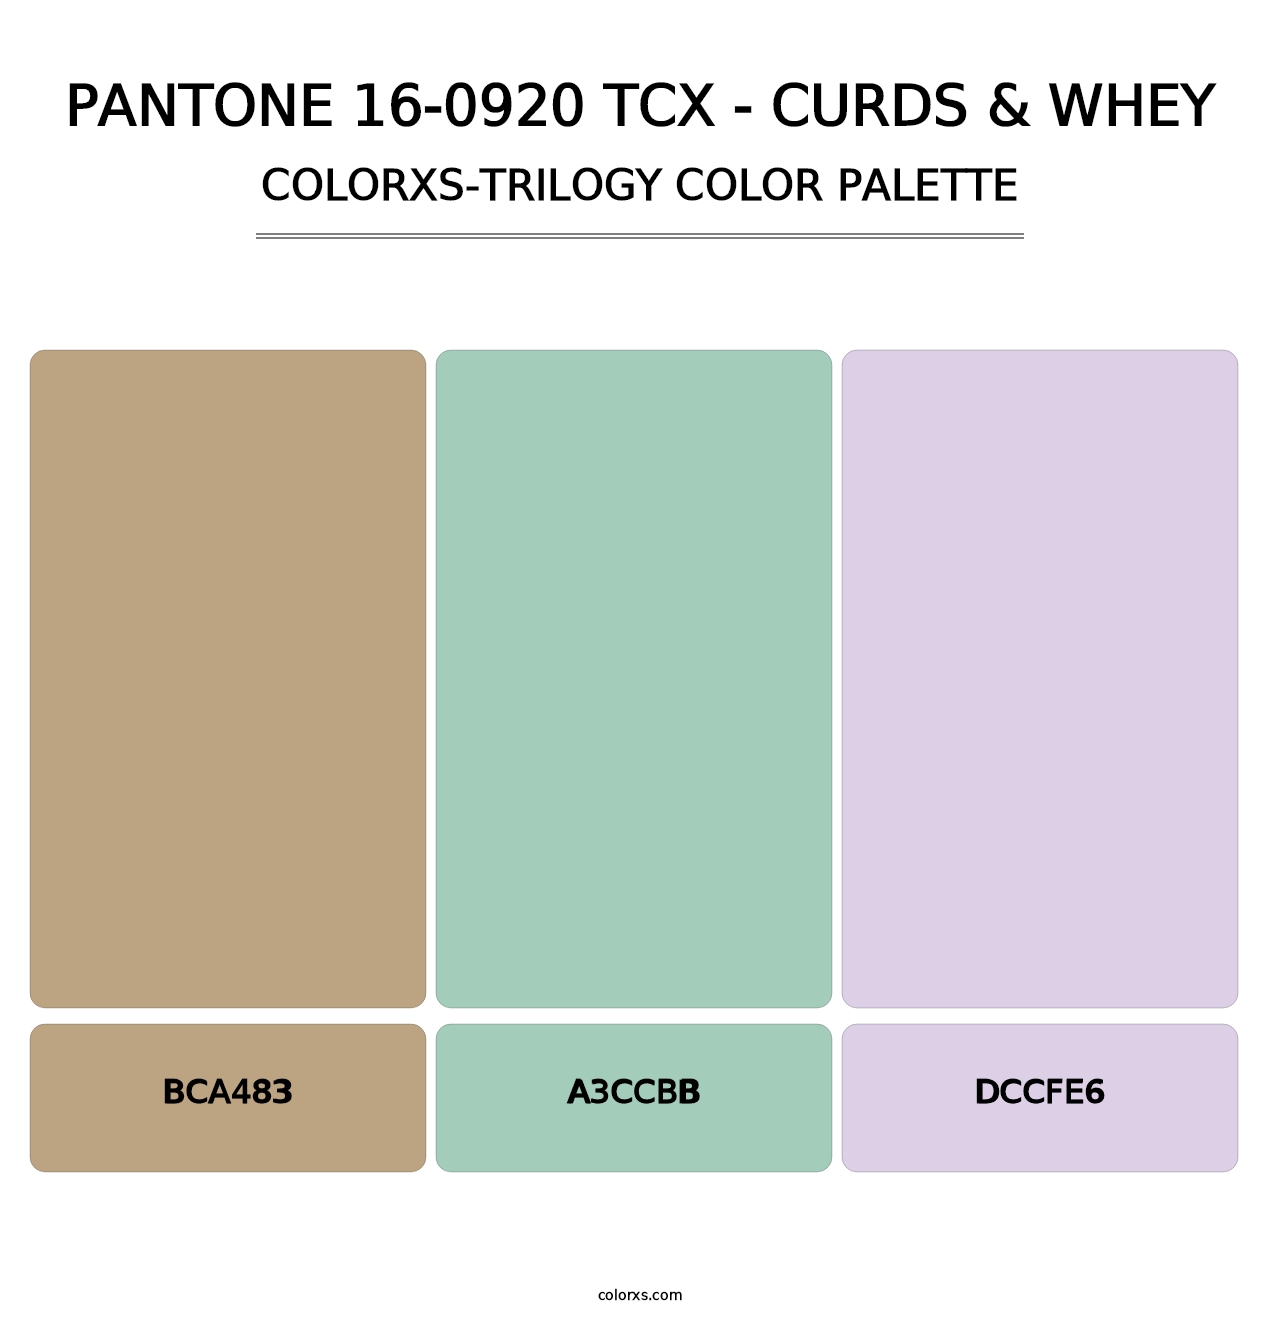 PANTONE 16-0920 TCX - Curds & Whey - Colorxs Trilogy Palette